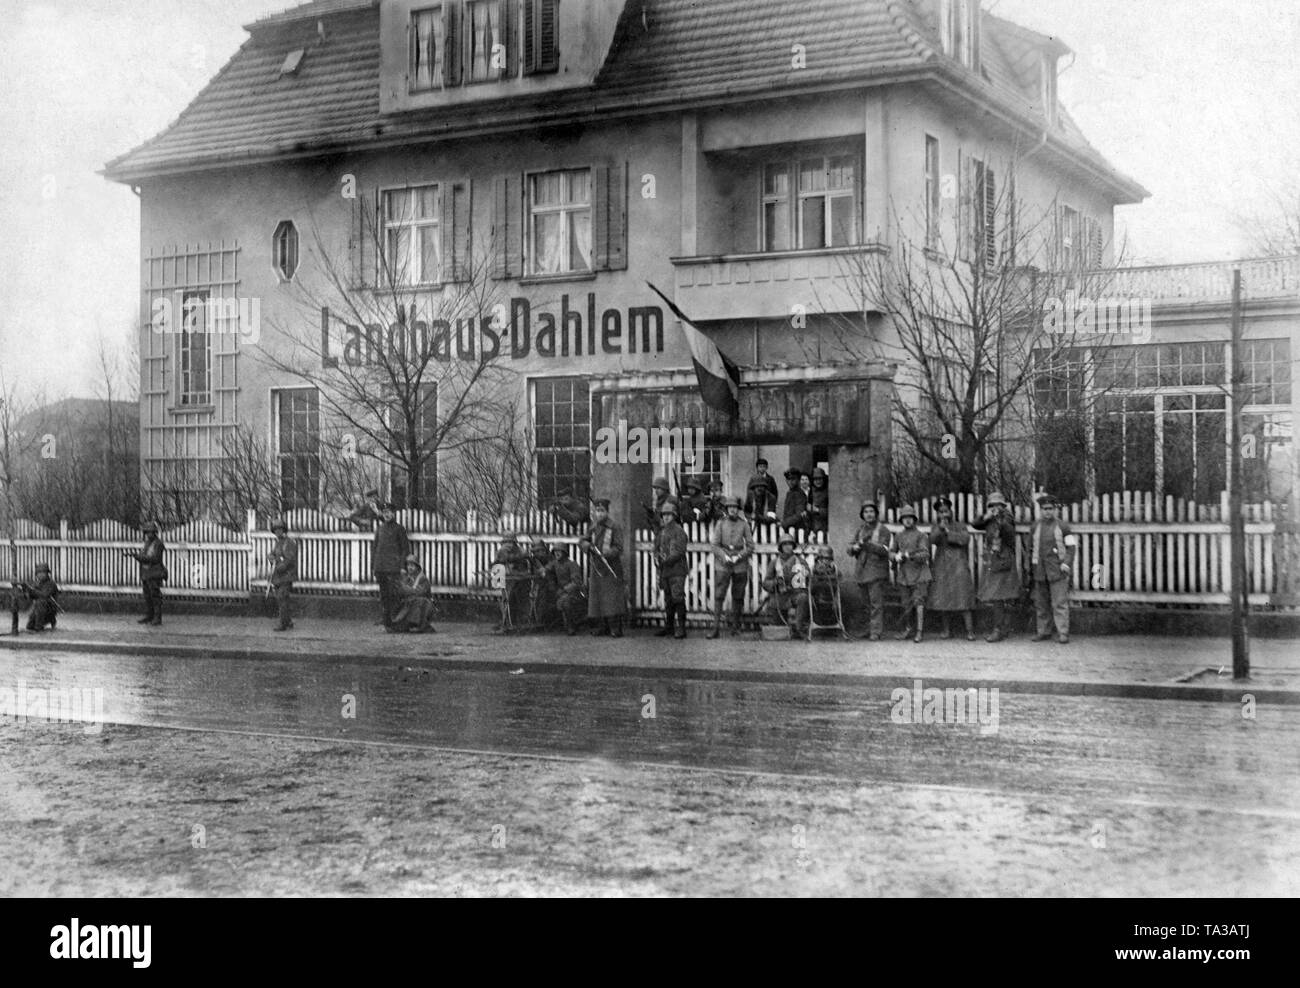 Vista del "Landhaus Dahlem' en el distrito del mismo nombre en Berlín. Esta fue la sede de la fuer Volksbeauftragten Heer und Marine (Representante del Pueblo para el ejército y la armada) Gustav Noske durante el levantamiento de enero y la Berlin Maerzkaempfe (marzo de combate) en la primavera de 1919. Pararse delante de los miembros de los Freikorps, que fueron responsables de la represión de los disturbios. El negro-blanco-rojo se izó la bandera. Esta foto fue tomada probablemente durante el levantamiento de enero. Foto de stock